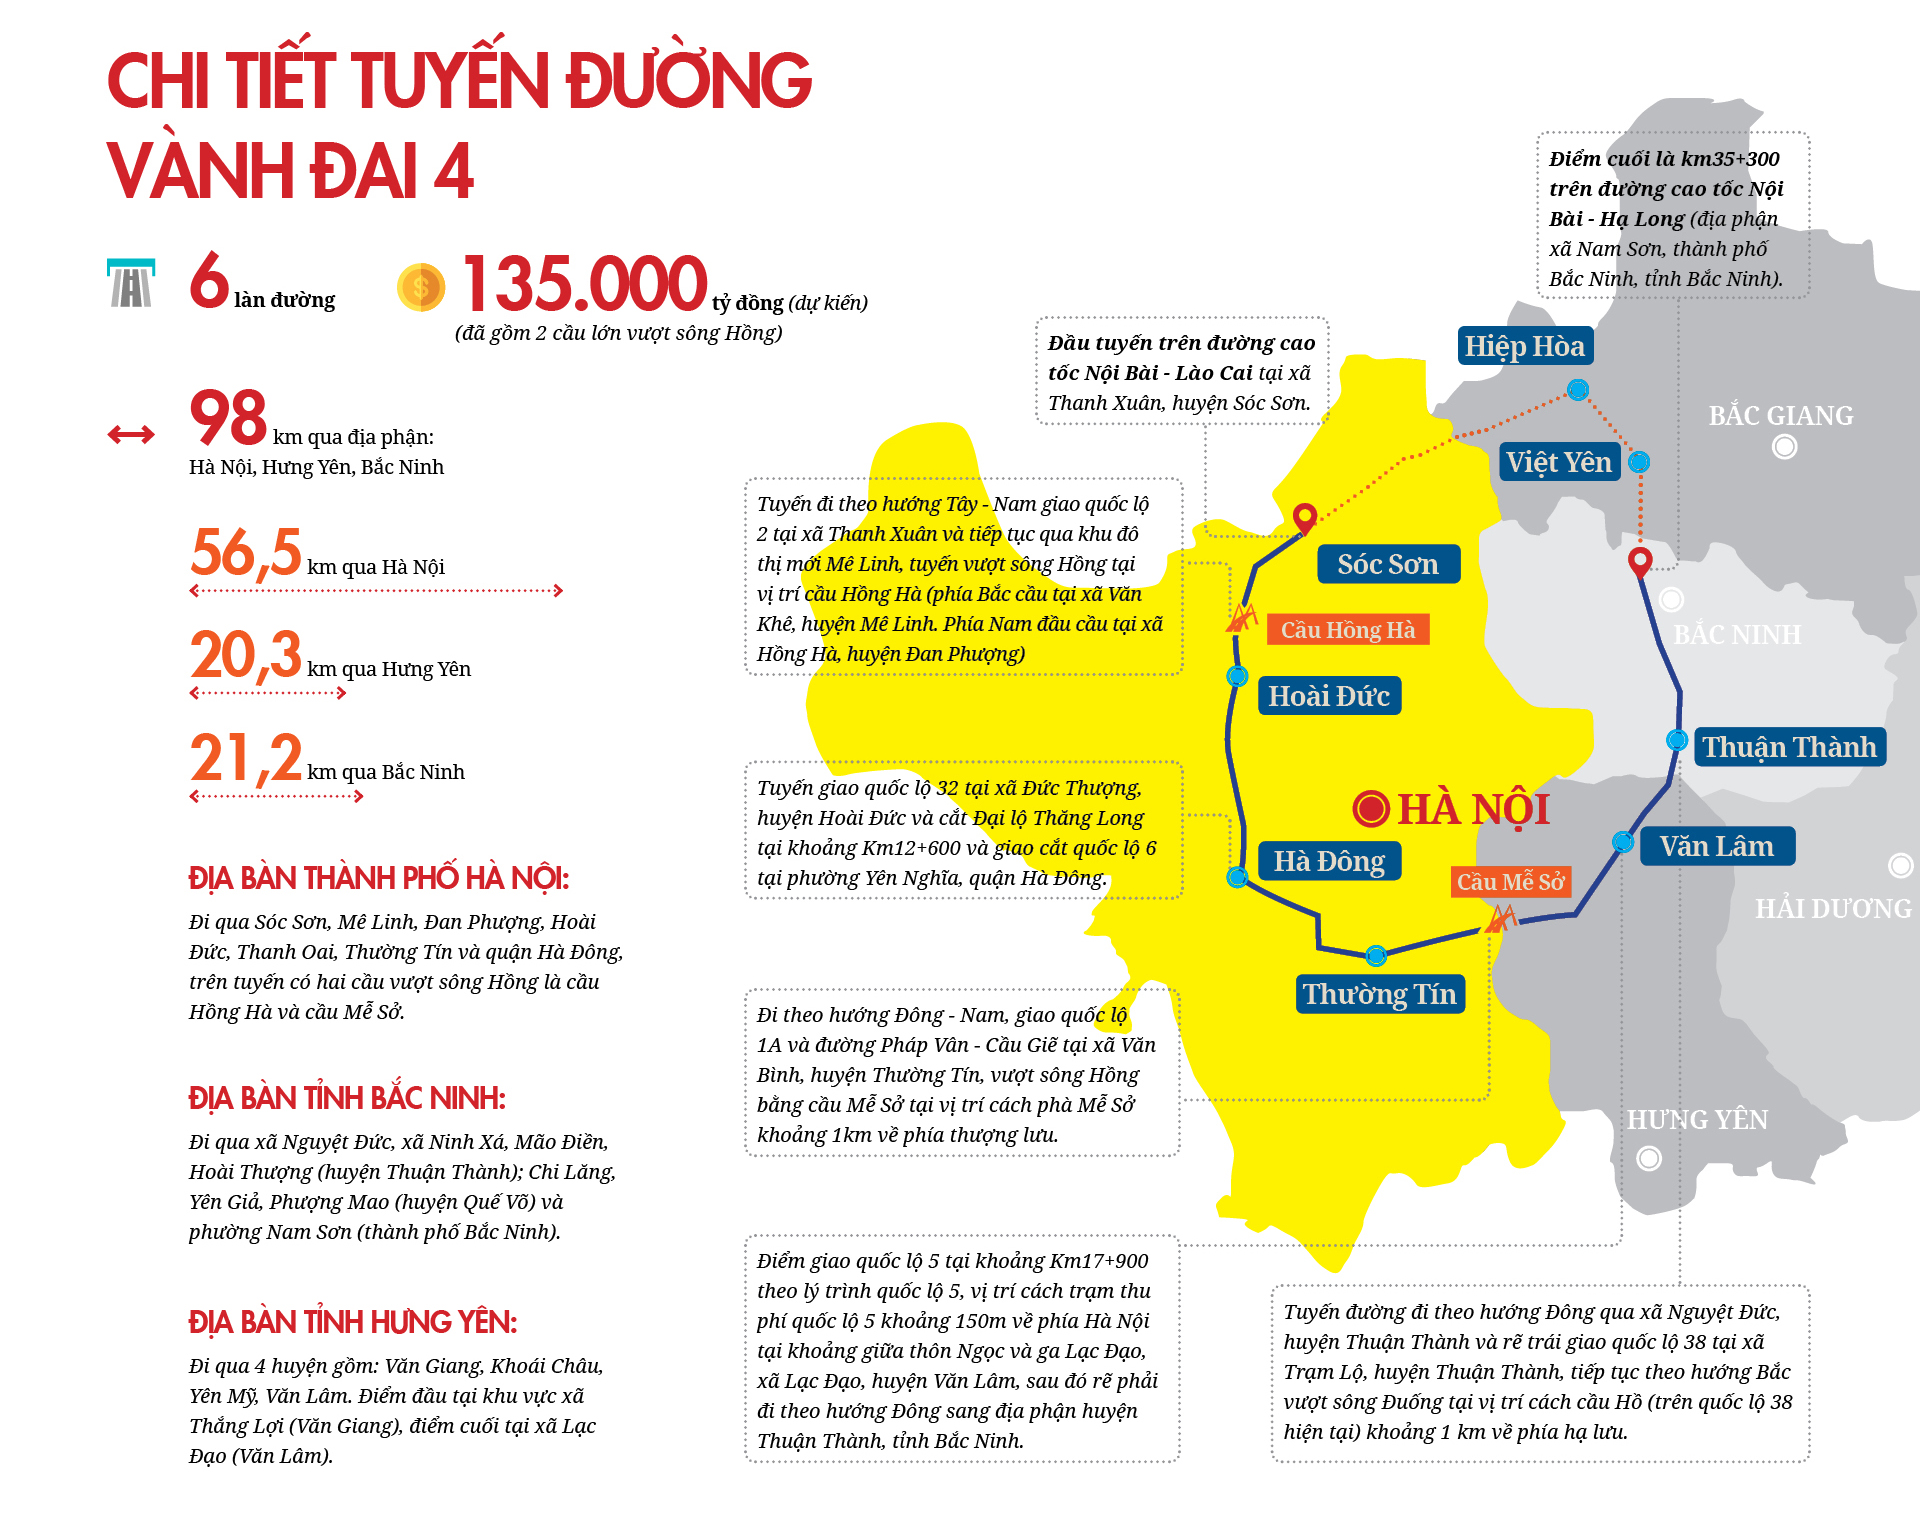 Đường Vành đai 4 Hà Nội: Vingroup đề xuất phương án rẻ hơn 36.000 tỷ đồng - Ảnh 1.